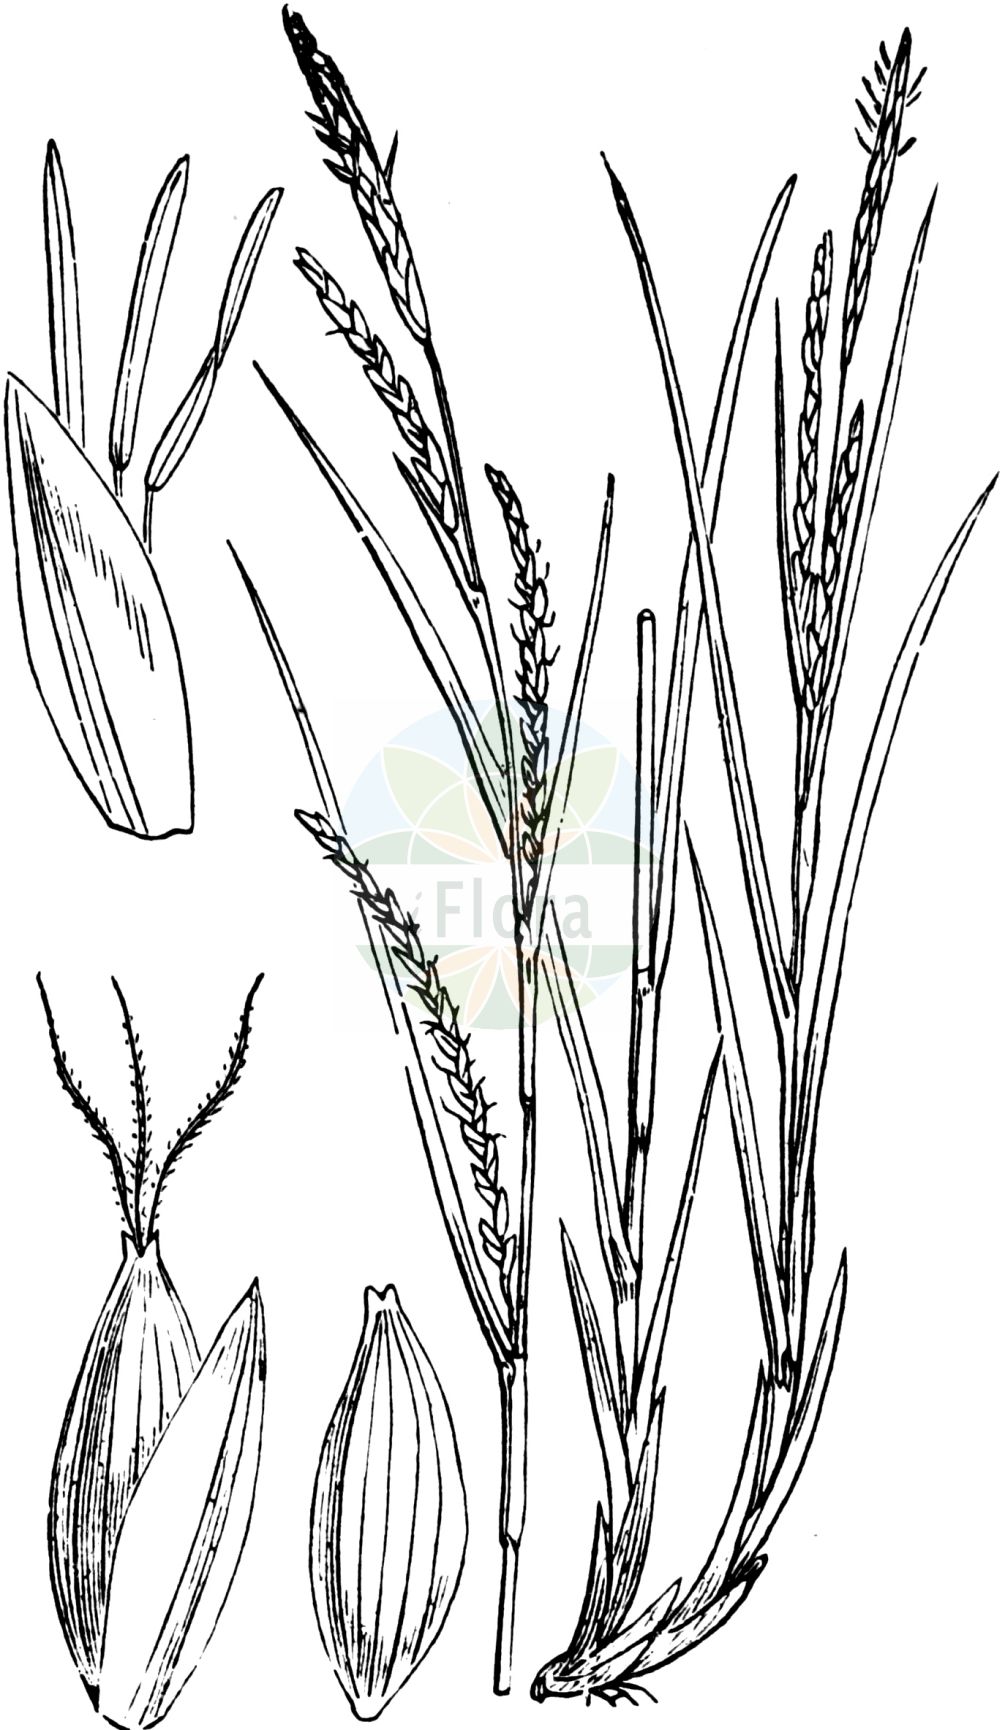 Historische Abbildung von Carex strigosa (Dünnährige Segge - Thin-spiked Wood-Sedge). Das Bild zeigt Blatt, Bluete, Frucht und Same. ---- Historical Drawing of Carex strigosa (Dünnährige Segge - Thin-spiked Wood-Sedge). The image is showing leaf, flower, fruit and seed.(Carex strigosa,Dünnährige Segge,Thin-spiked Wood-Sedge,Carex strigosa,Duennaehrige Segge,Thin-spiked Wood-Sedge,Loose-spiked Wood Sedge,Carex,Segge,Sedge,Cyperaceae,Sauergräser,Sedge family,Blatt,Bluete,Frucht,Same,leaf,flower,fruit,seed,Fitch et al. (1880))